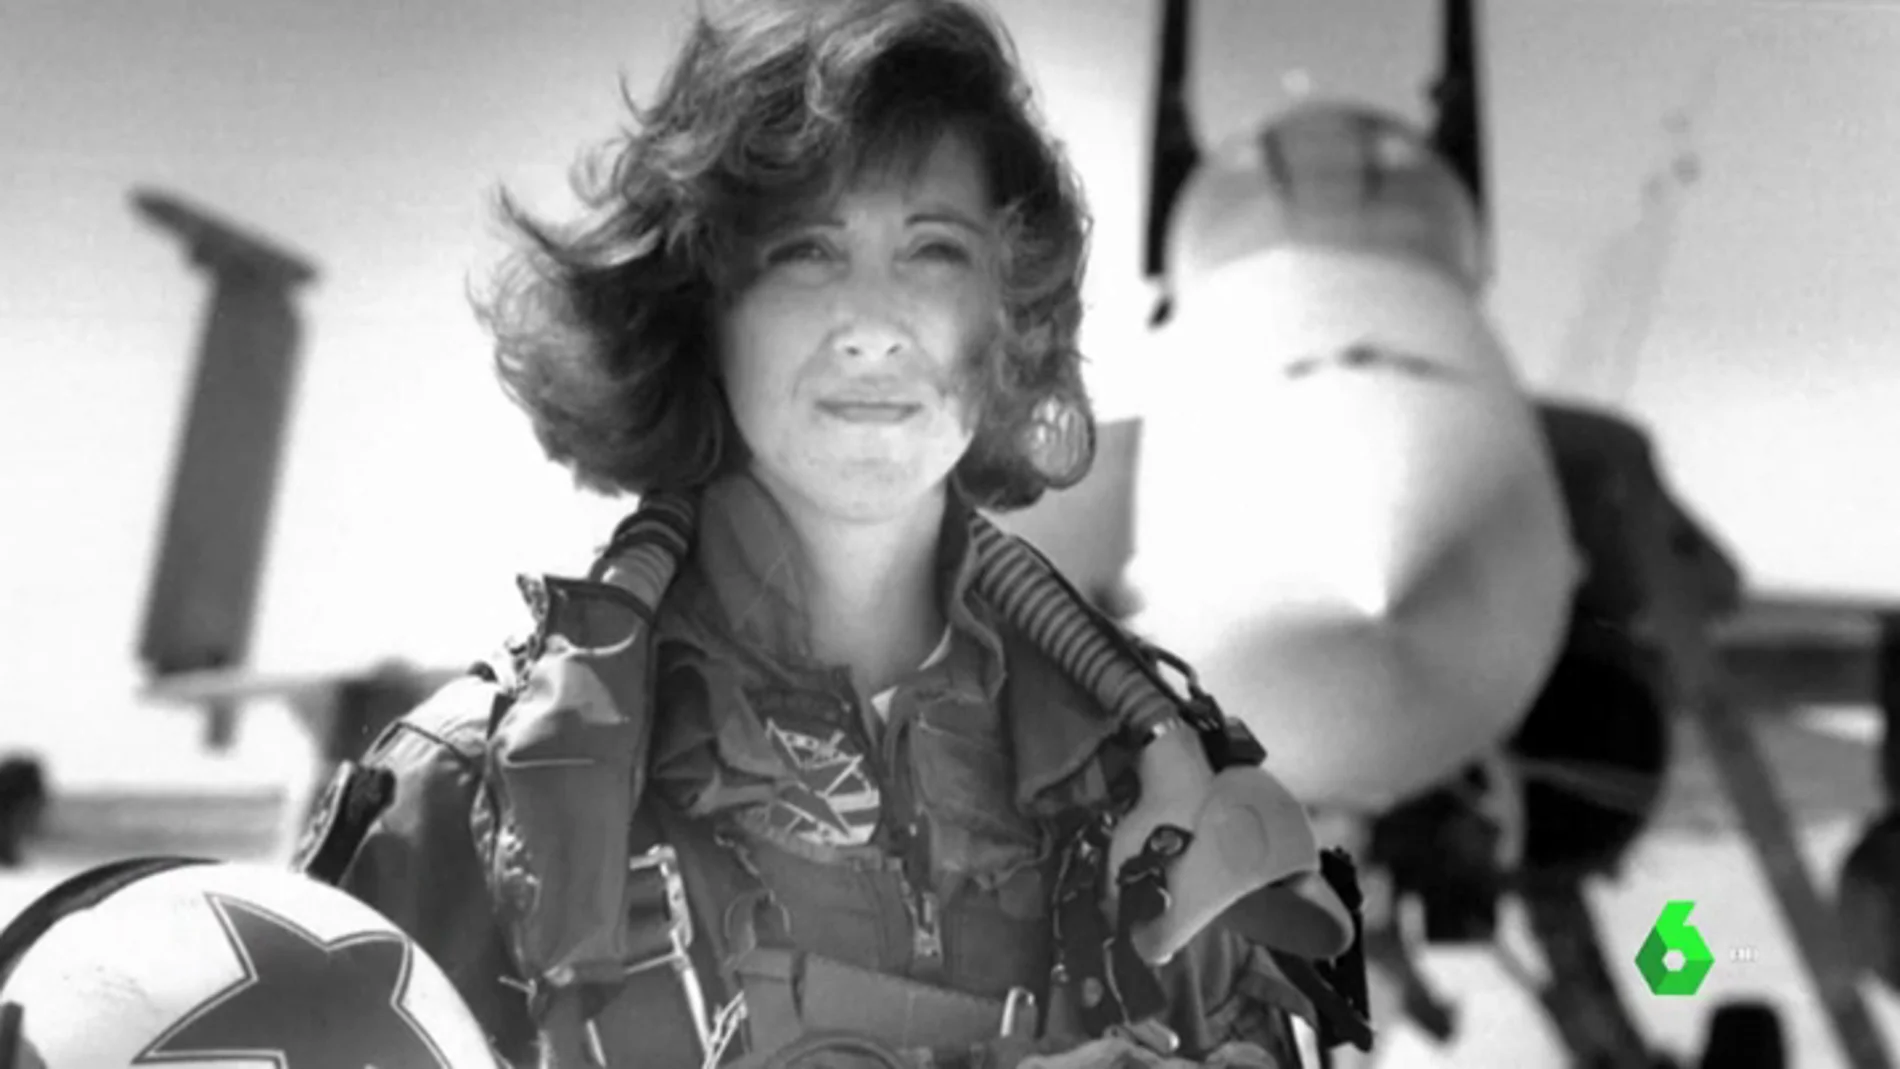 Tammie Jo Shults, la heroica piloto que evitó una catástrofe en el accidente aéreo de EEUU gracias a sus nervios de acero